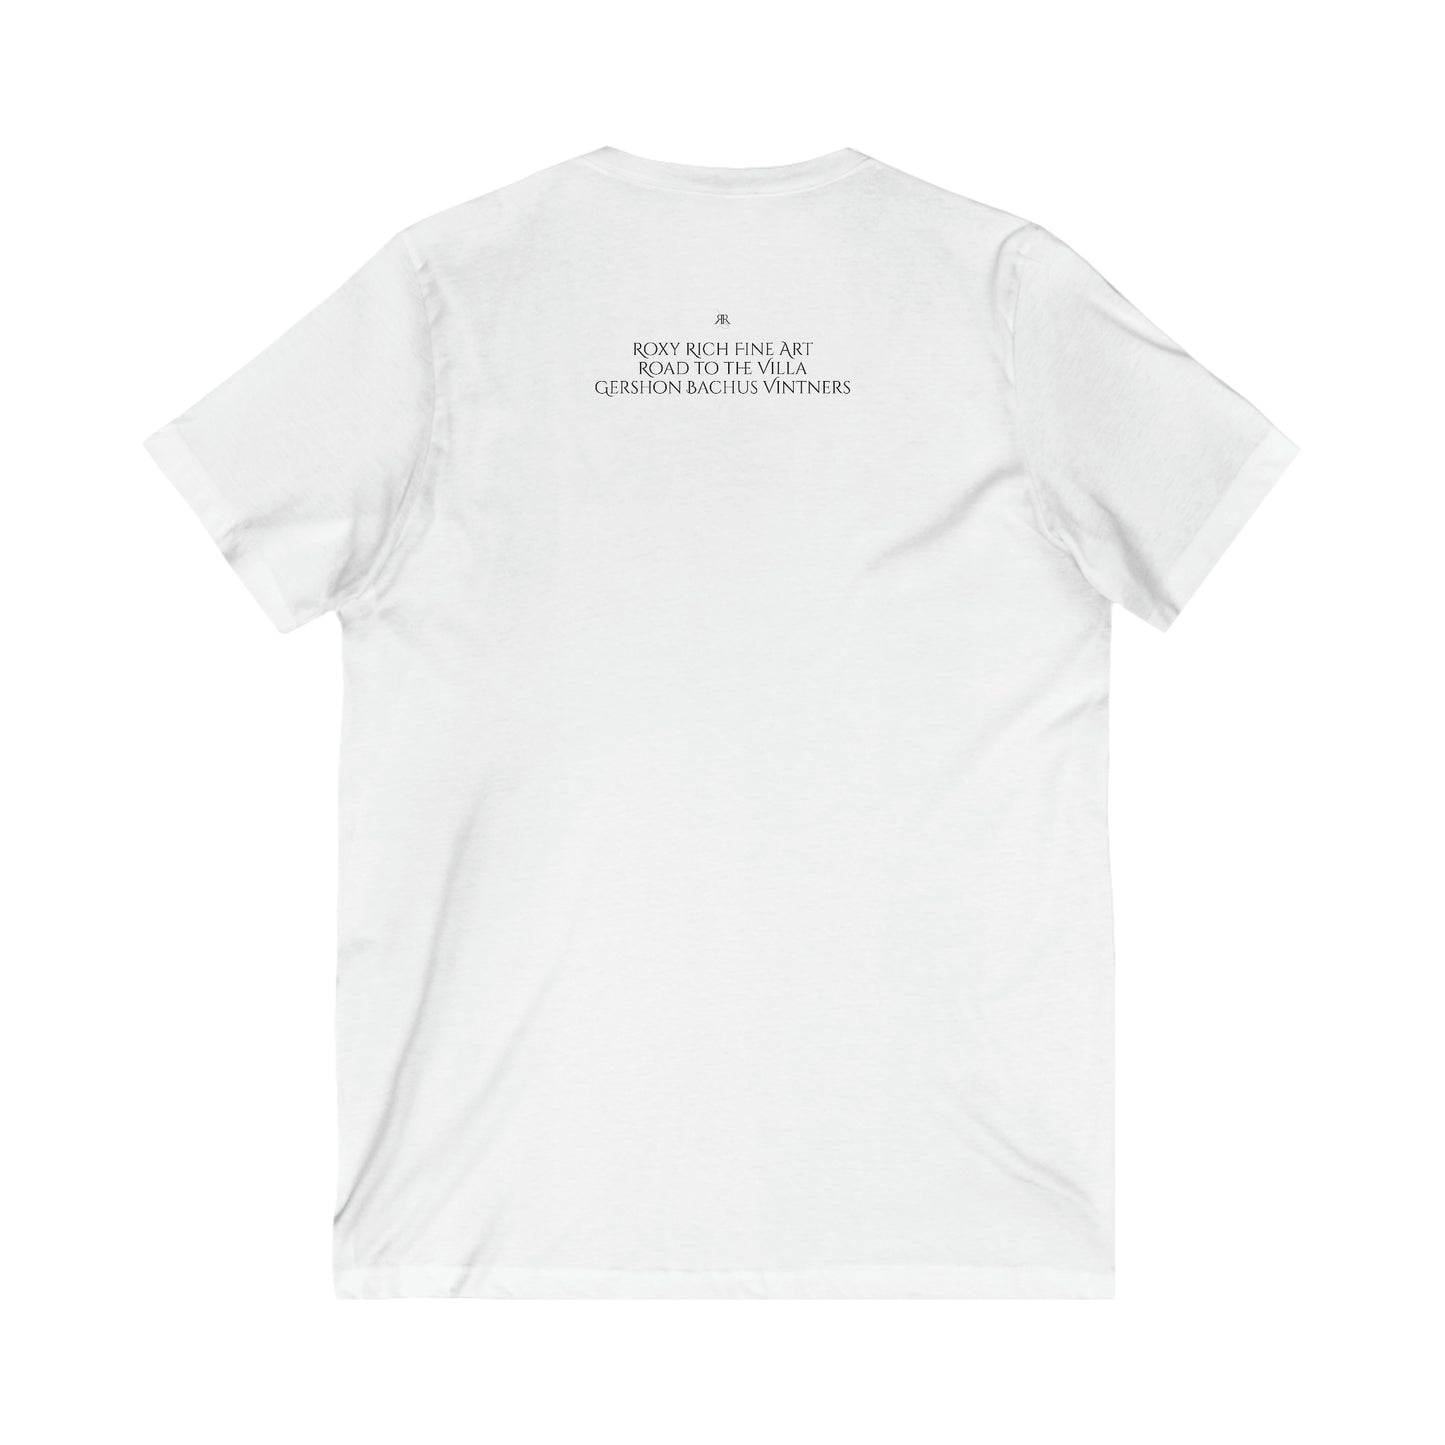 Camino a la Villa (GBV) Gershon Bachus Vintners-Unisex Jersey Camiseta de manga corta con cuello en V